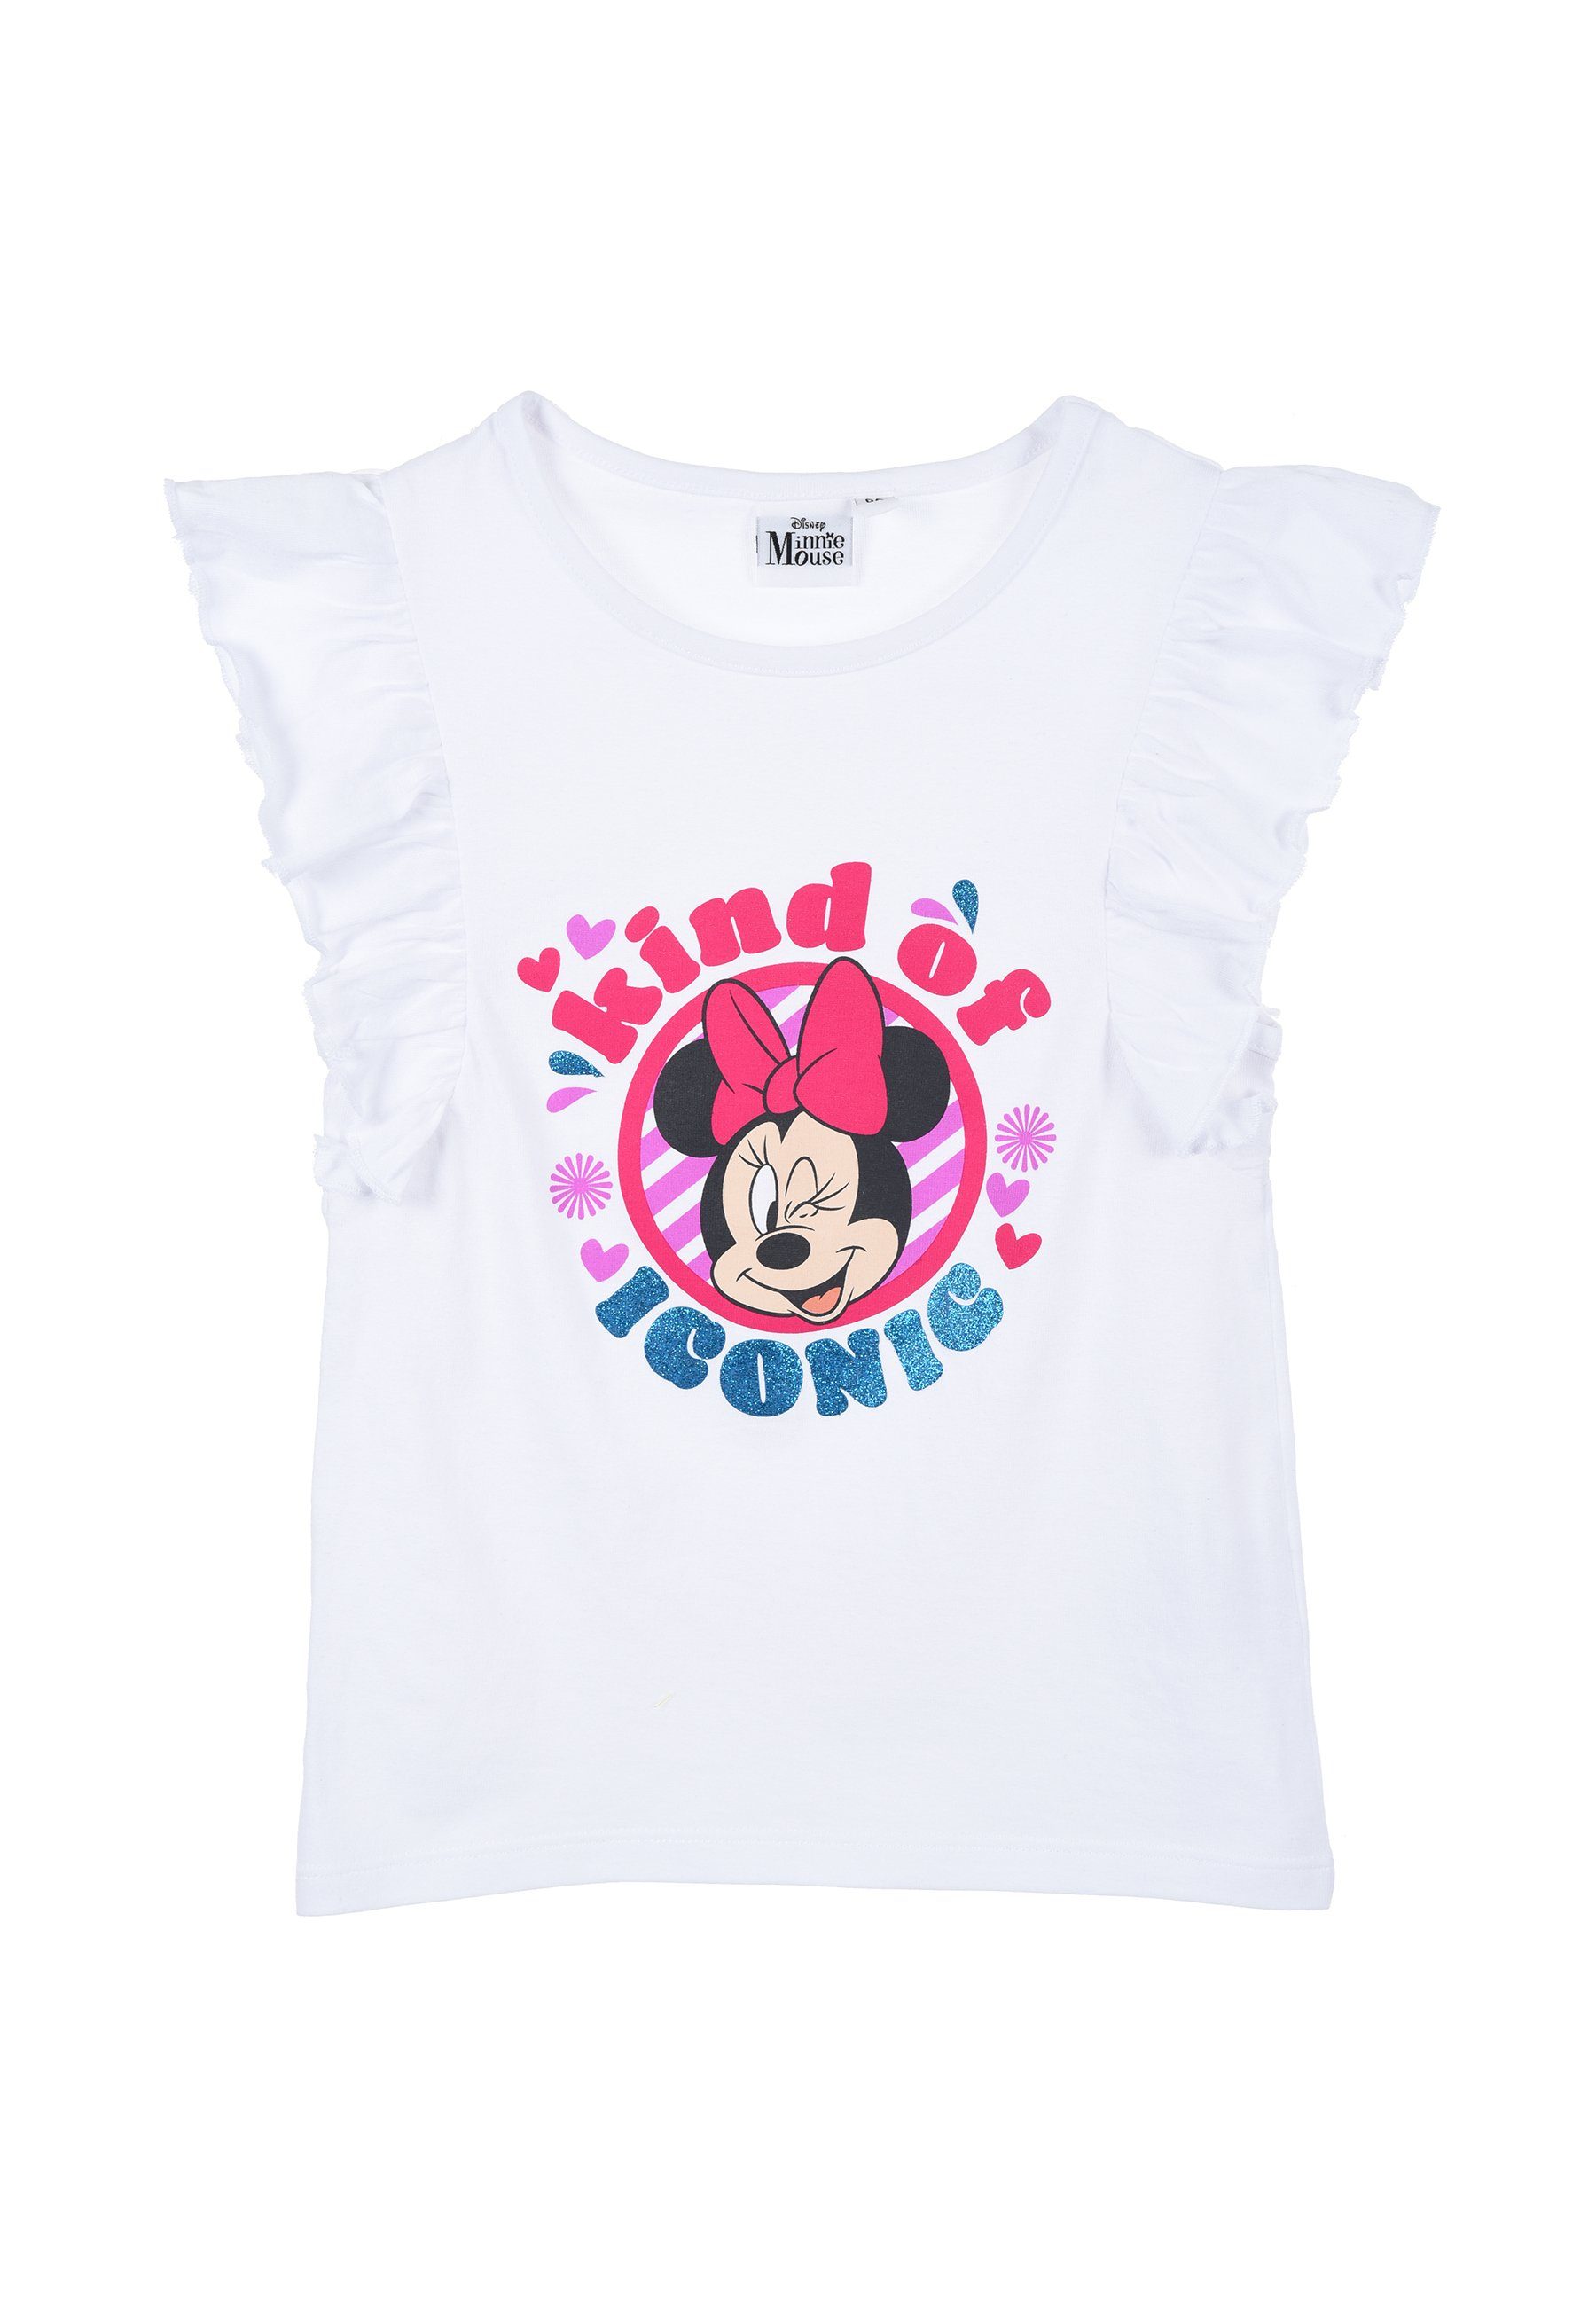 Disney Minnie Mouse T-Shirt Sommer Kinder T-Shirt Mädchen Weiß kurzarm Oberteil Shirt